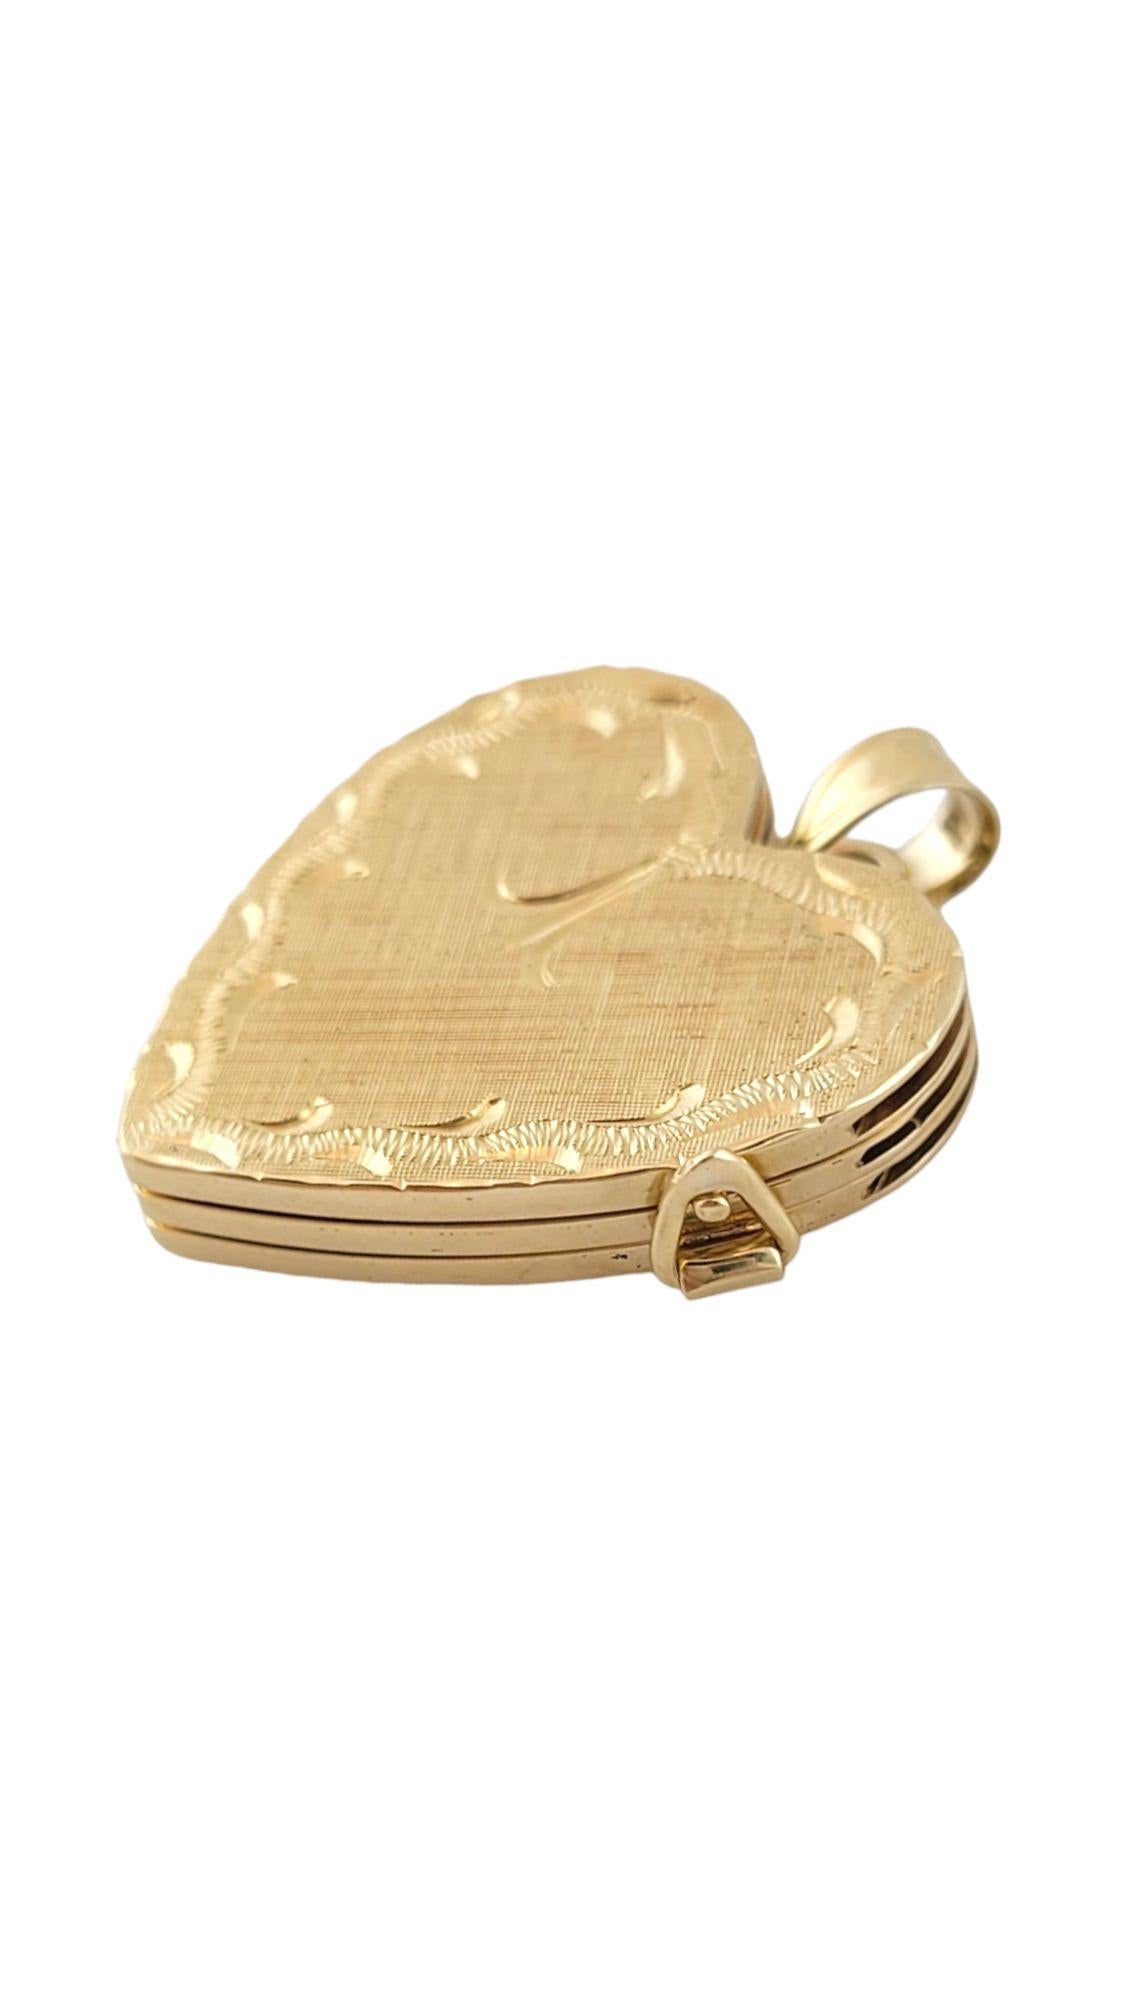 Vintage 14K Yellow Gold Multi Layer Heart Locket (médaillon en forme de coeur)

Ce magnifique médaillon en or 14 carats possède 3 couches différentes pour vous permettre d'ajouter plus de photos dans votre médaillon !

Taille : 25.12mm X 25.98mm X